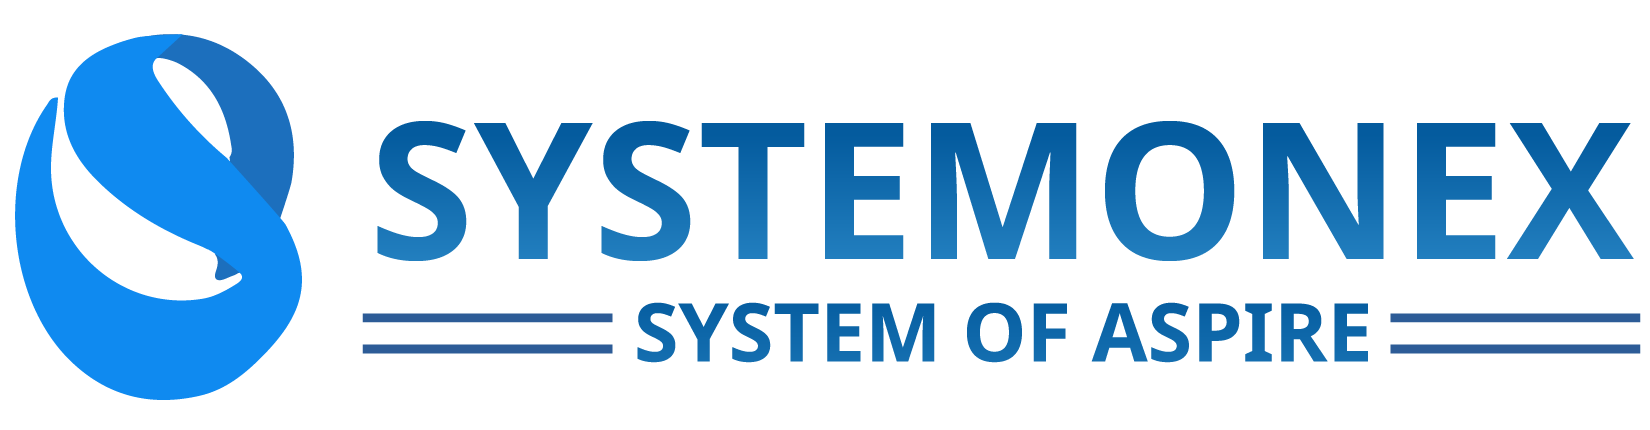 Systemonex Logo